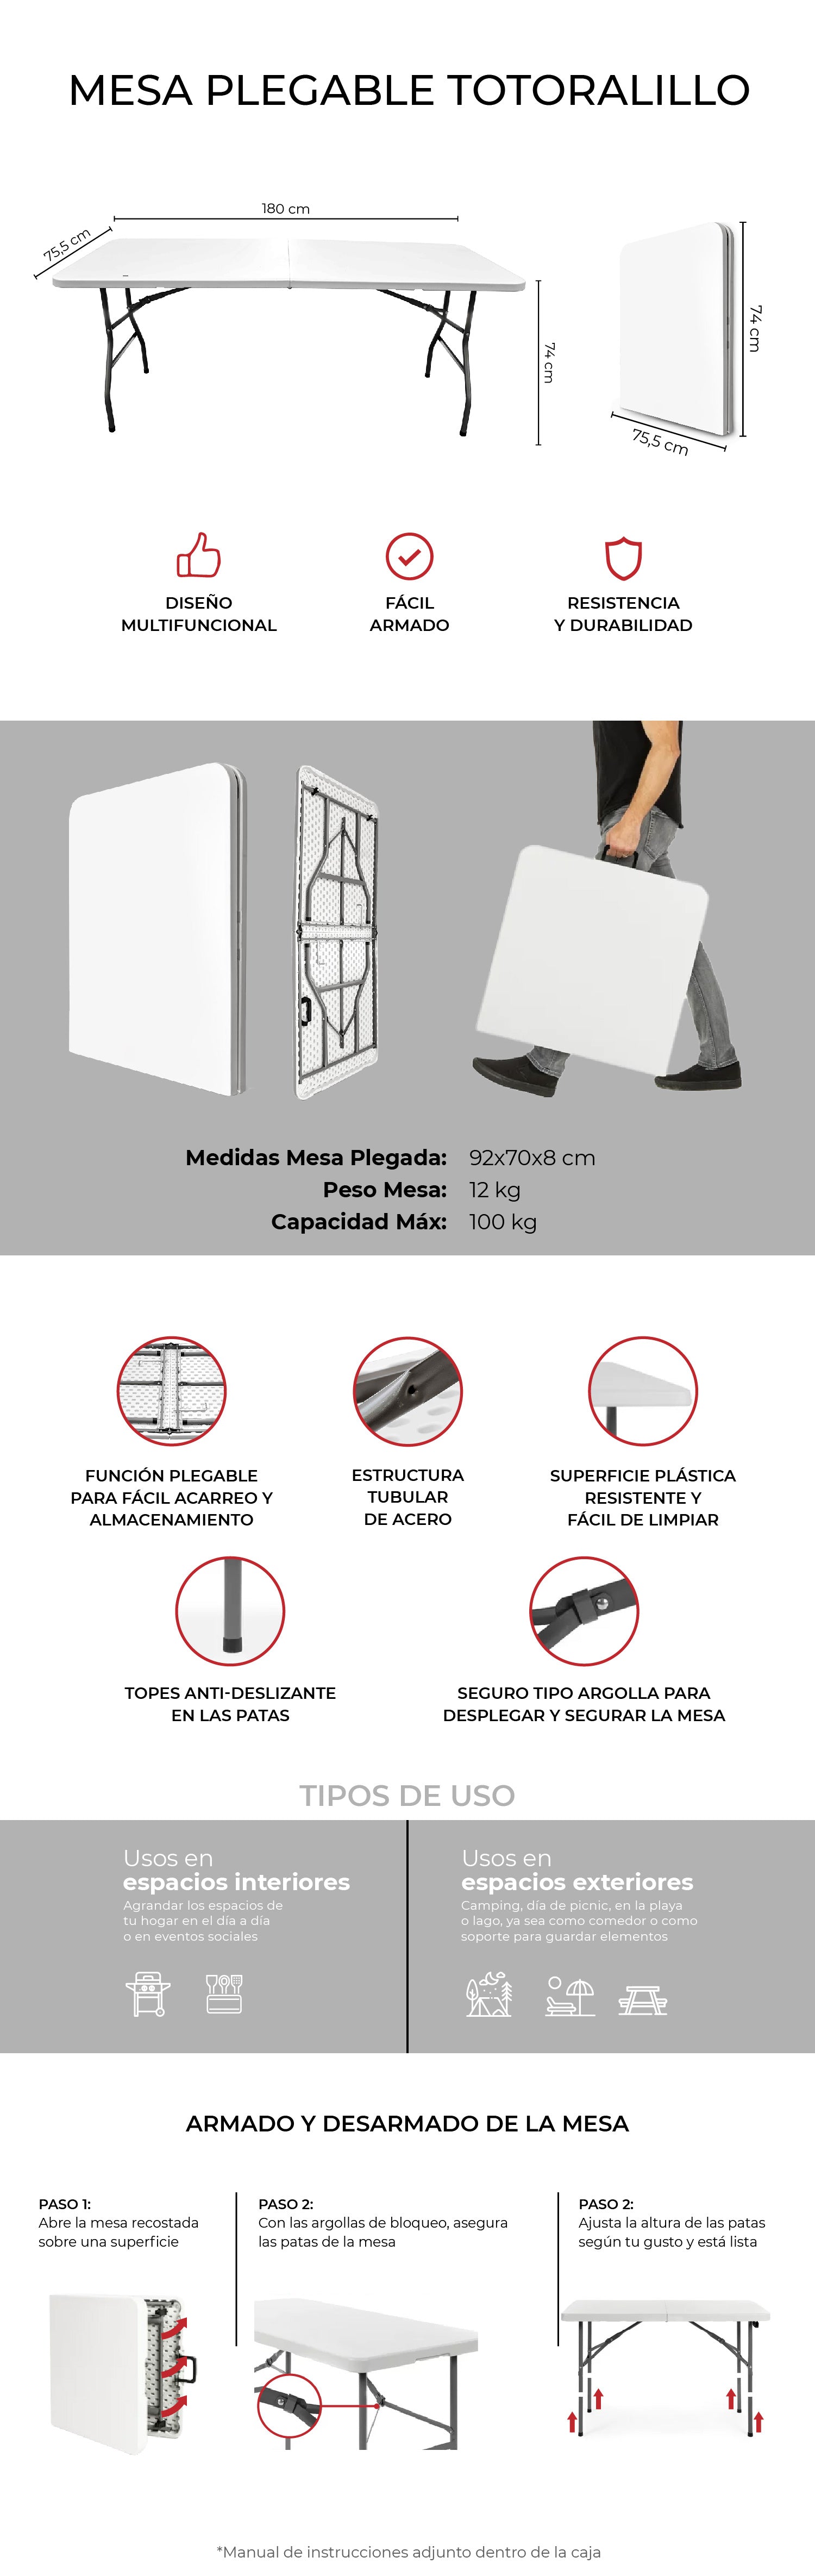 Mesa Plegable Multifuncional, 180x74x74 cm, Blanco